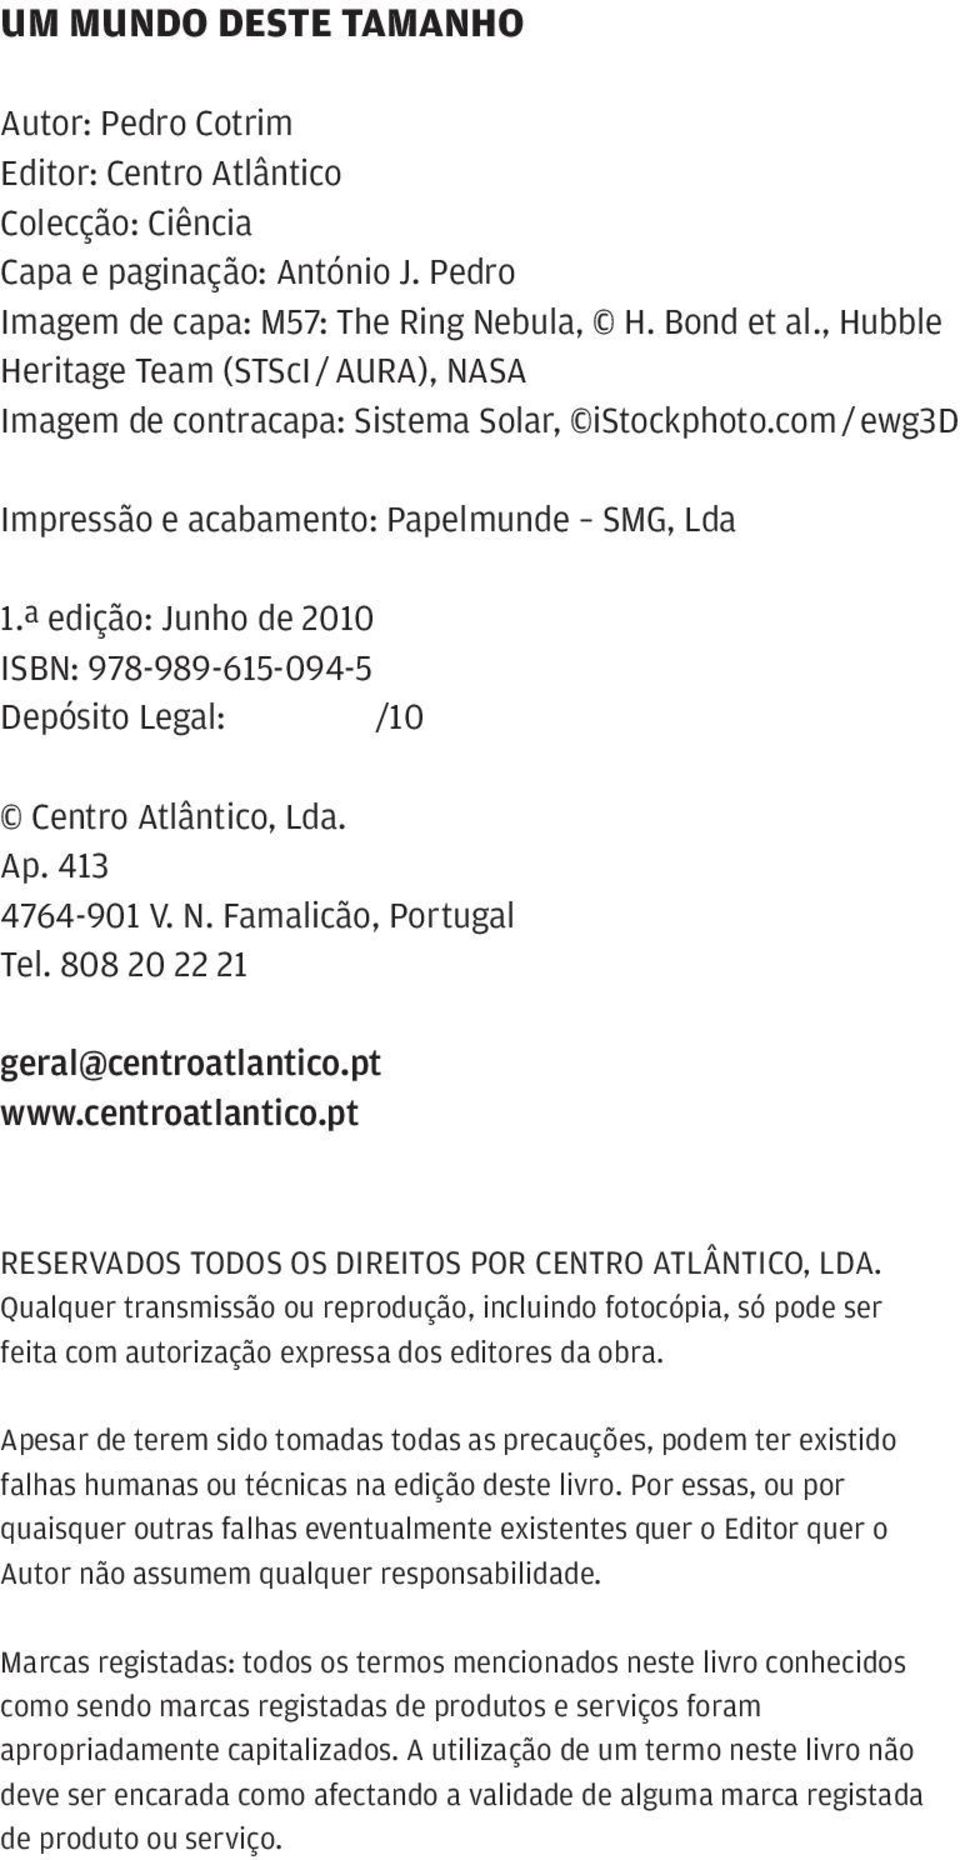 ª edição: Junho de 2010 ISBN: 978-989-615-094-5 Depósito Legal: /10 Centro Atlântico, Lda. Ap. 413 4764-901 V. N. Famalicão, Portugal Tel. 808 20 22 21 geral@centroatlantico.